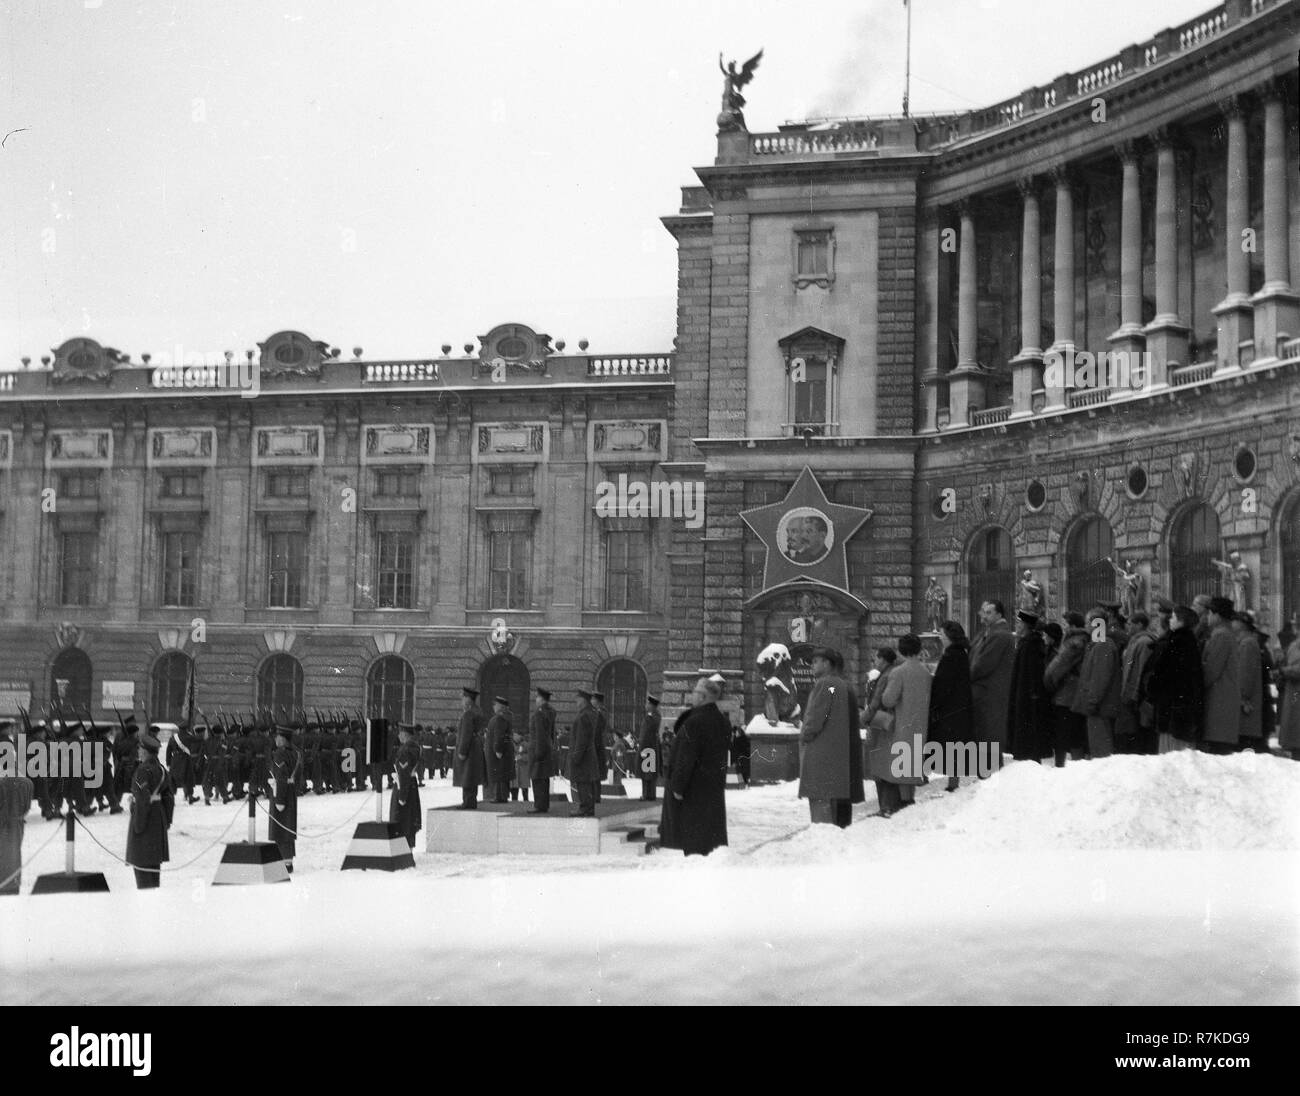 Wien während der Nachkriegszeit Alliierte Besetzung monatliche changhing der Wache in Wien Österreich im Imperial Palace Wien Hofburg Wien im Jahr 1947 Stockfoto